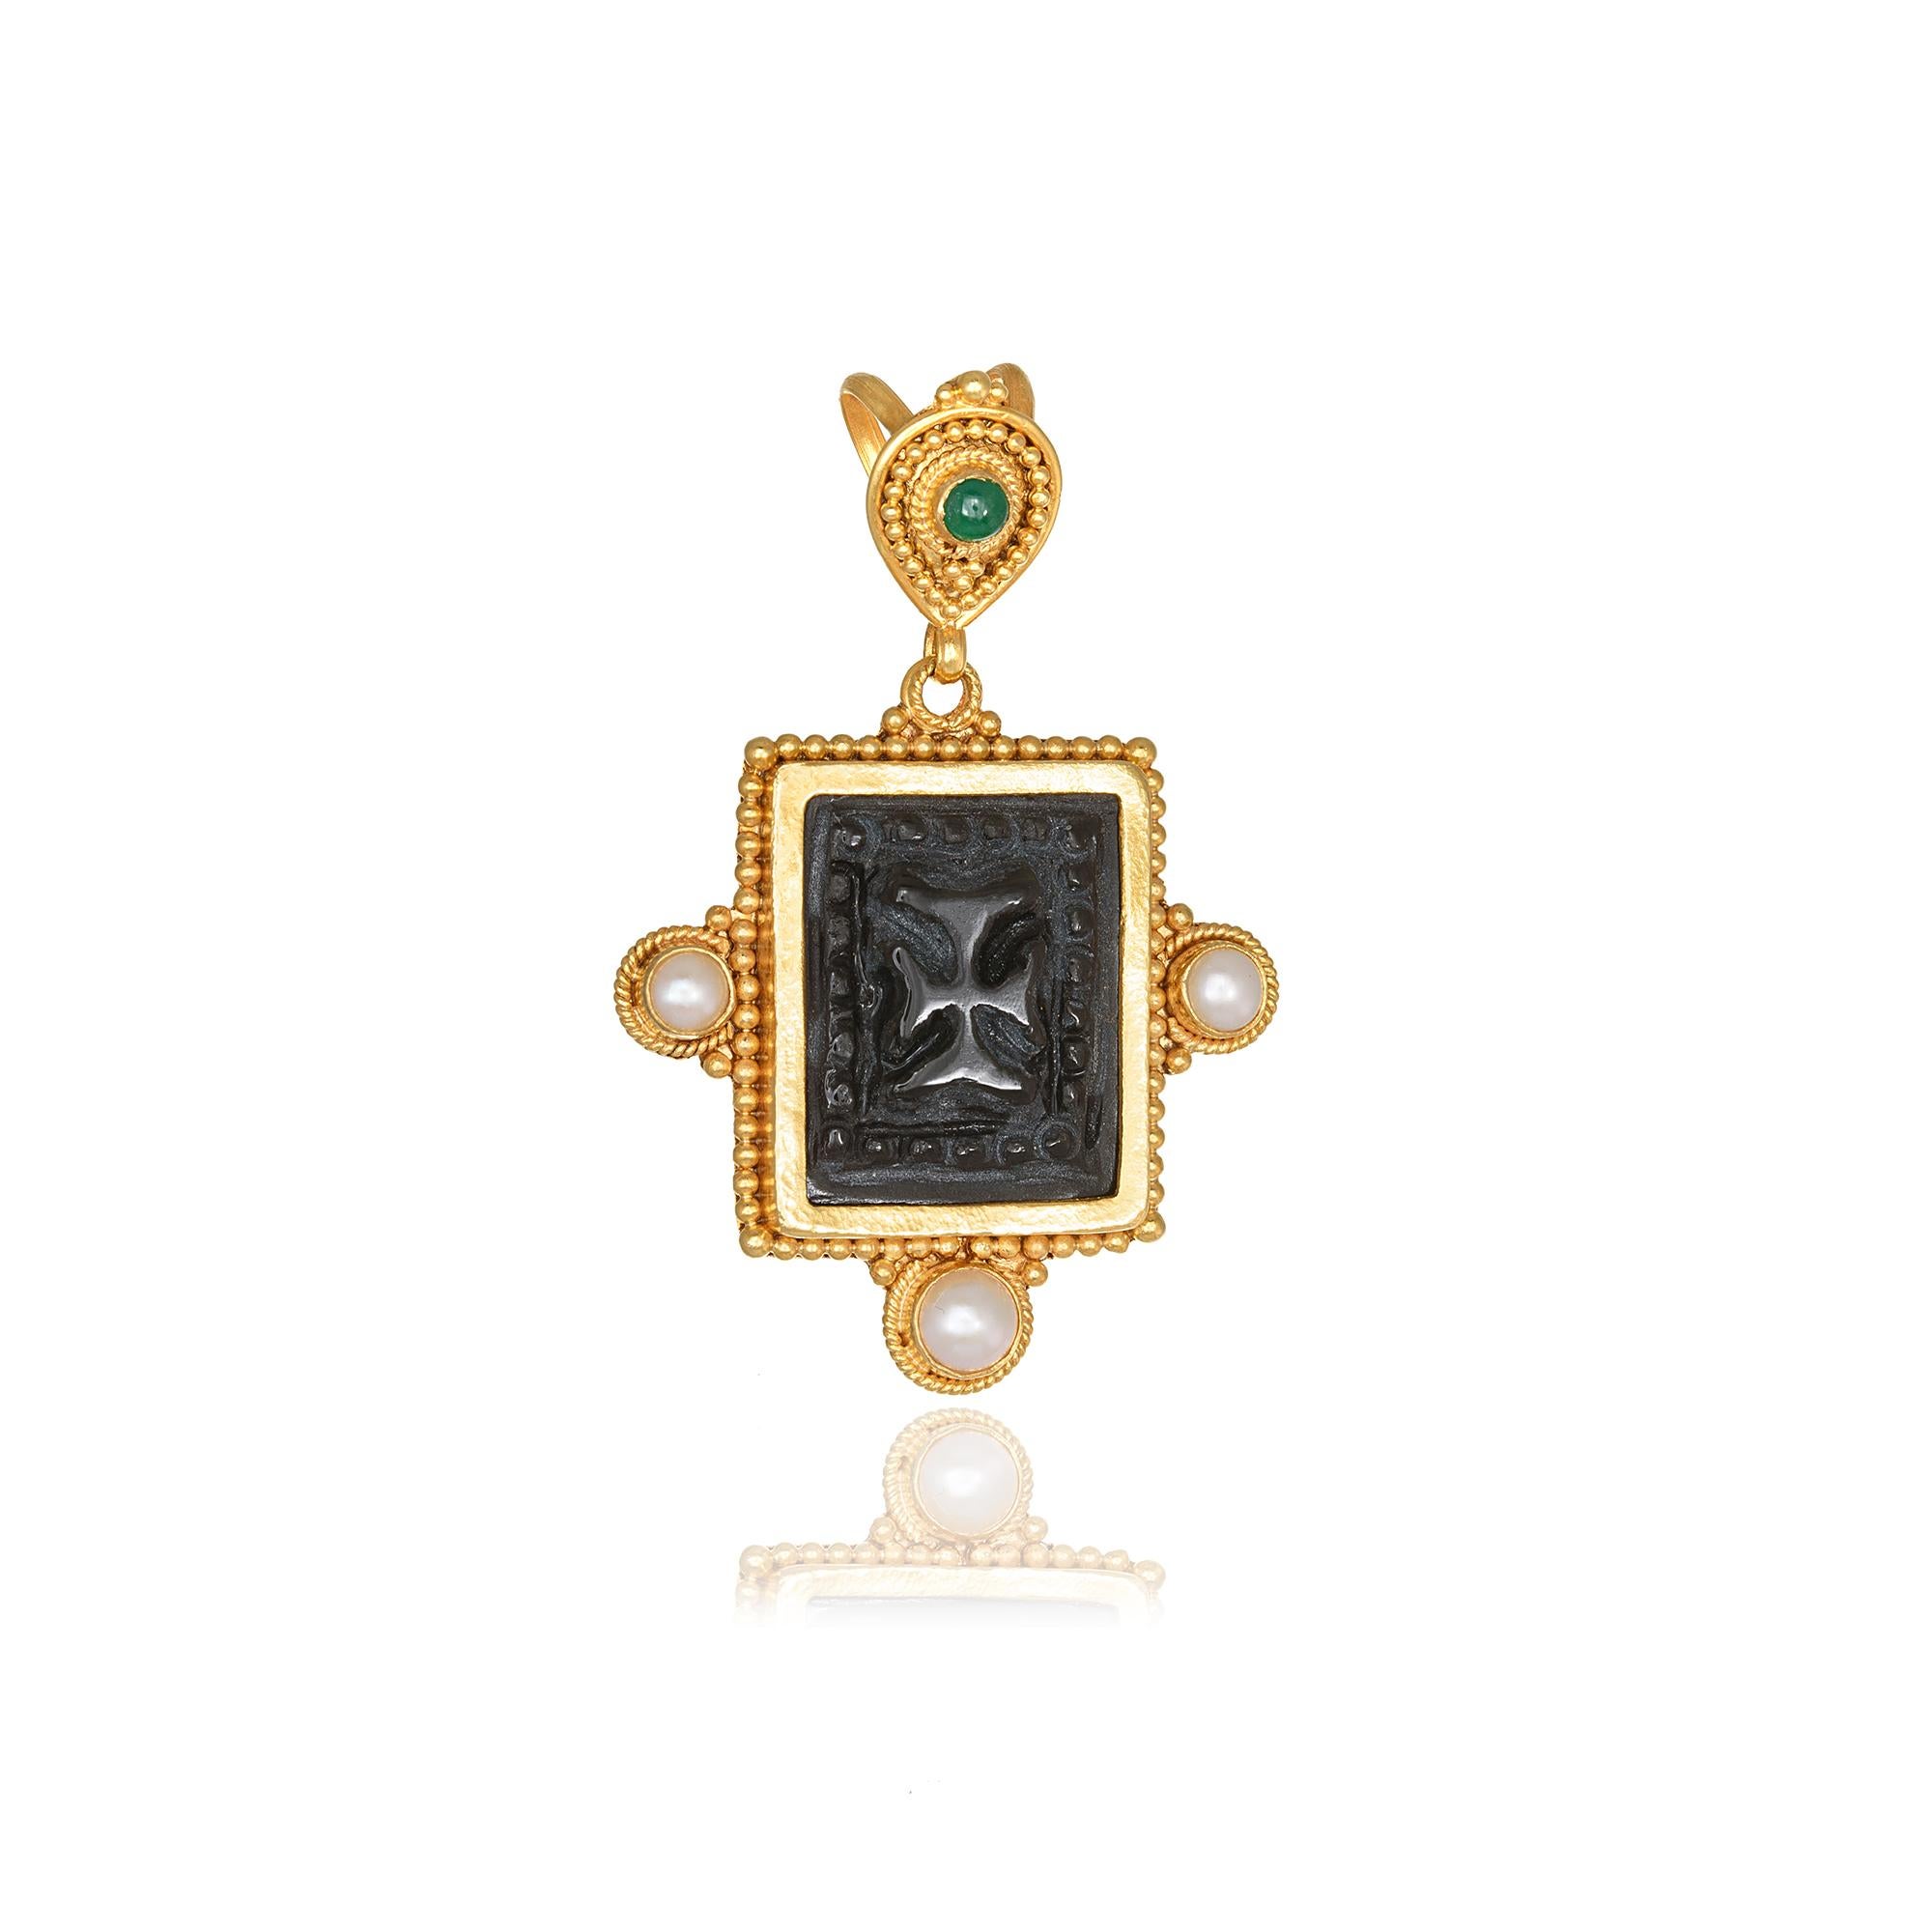 Pendentif en obsidienne avec une croix byzantine sculptée à la main, réalisé avec de la granulation en or jaune 22Kt, avec trois perles et une émeraude ronde. Ce pendentif à couper le souffle est tressé selon les techniques traditionnelles de la